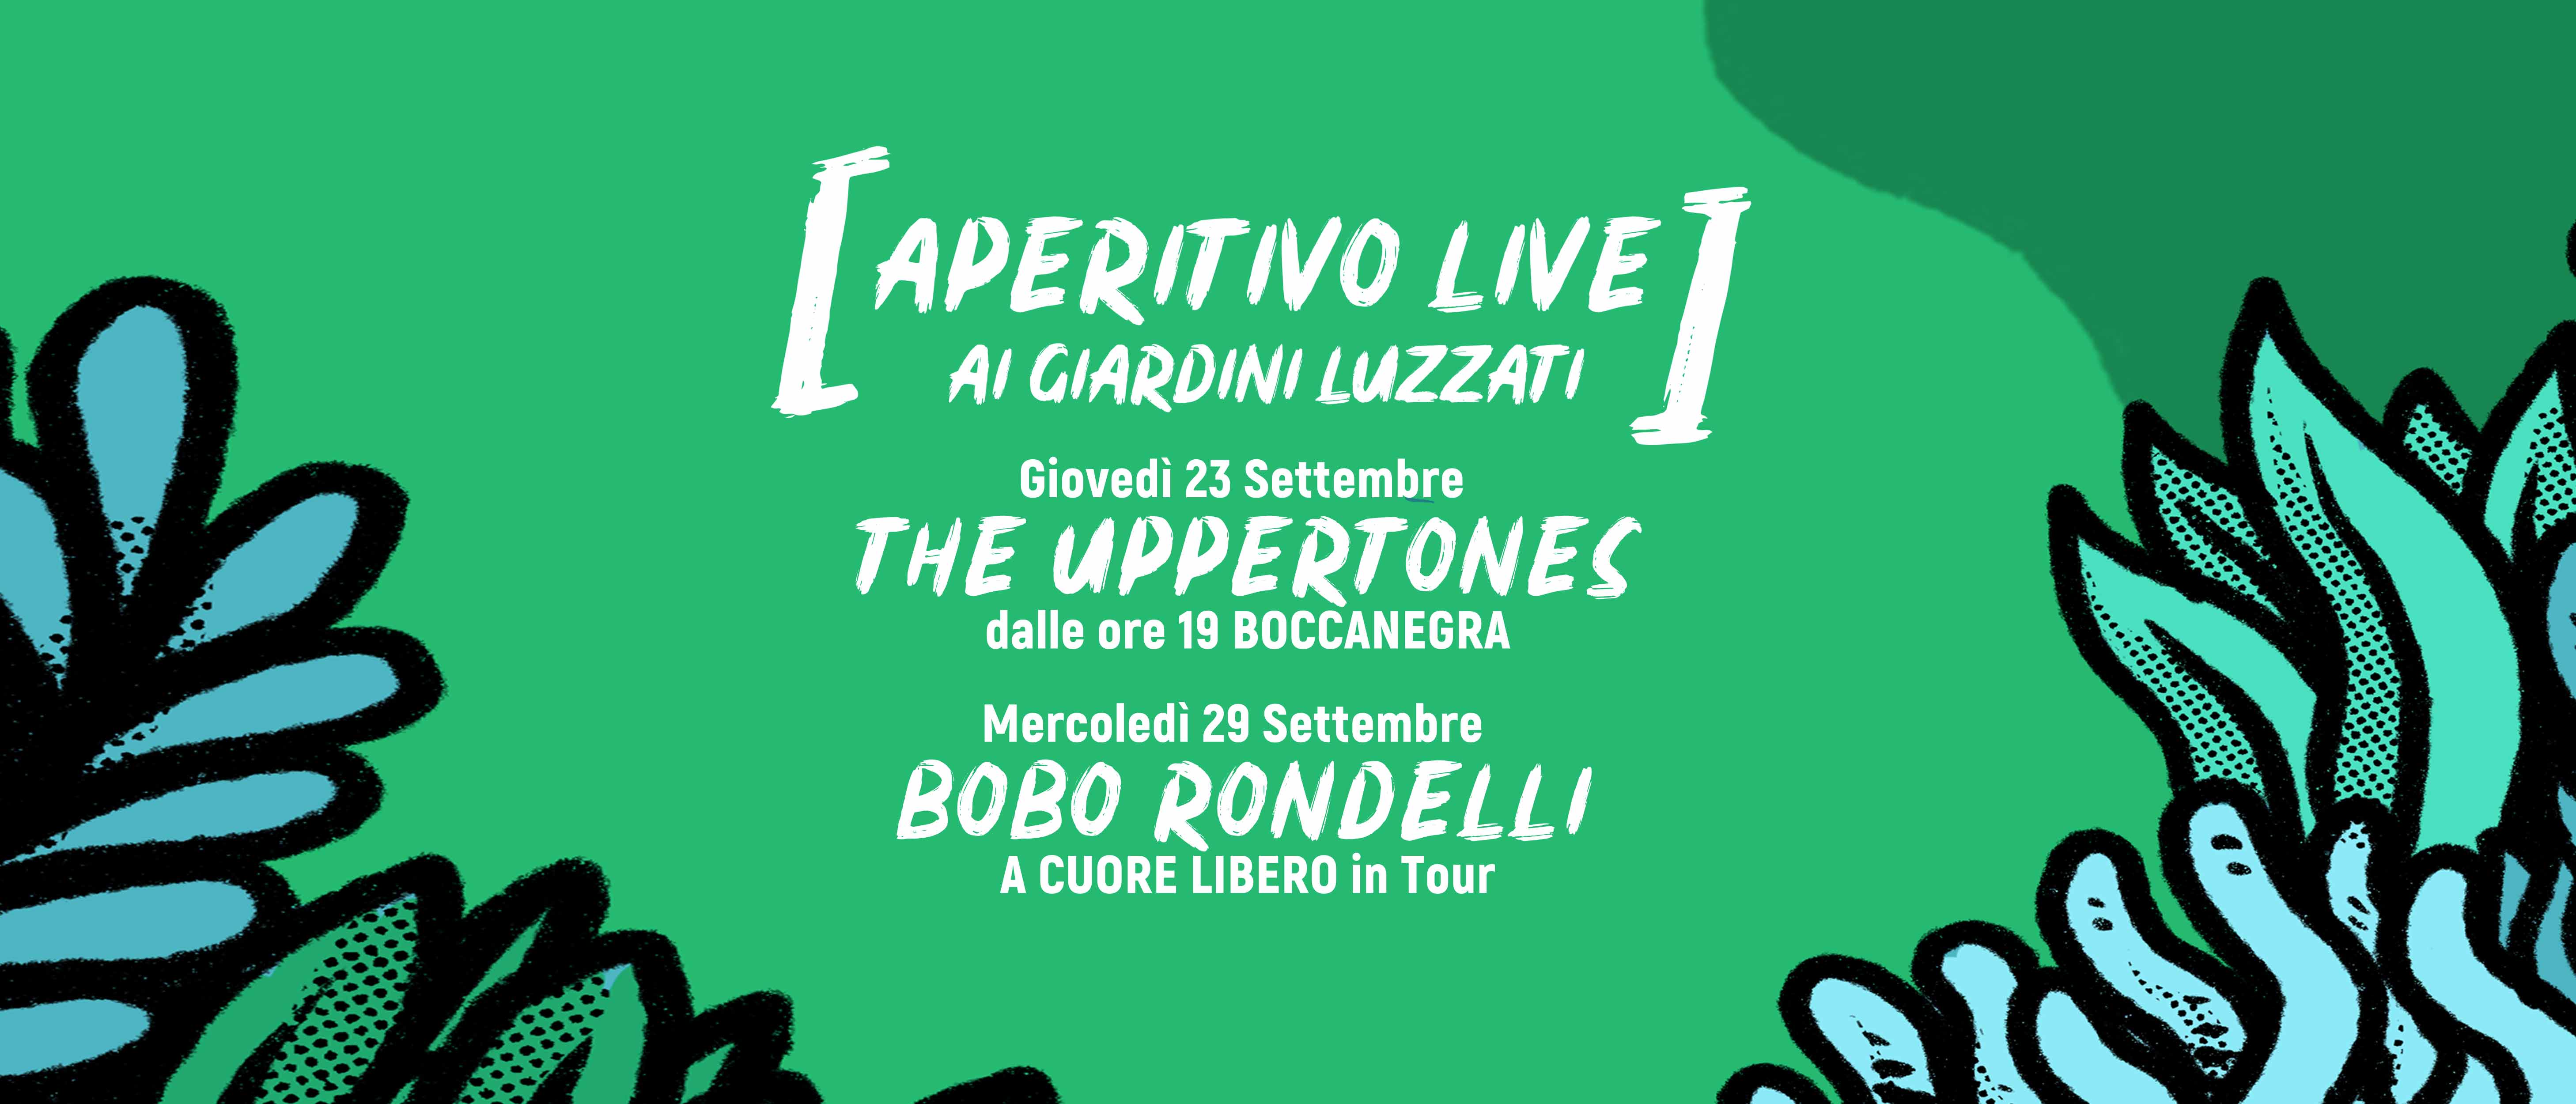 Aperitivo Live con Bobo Rondelli, The Uppertones e Goa-Boa ai Giardini Luzzati